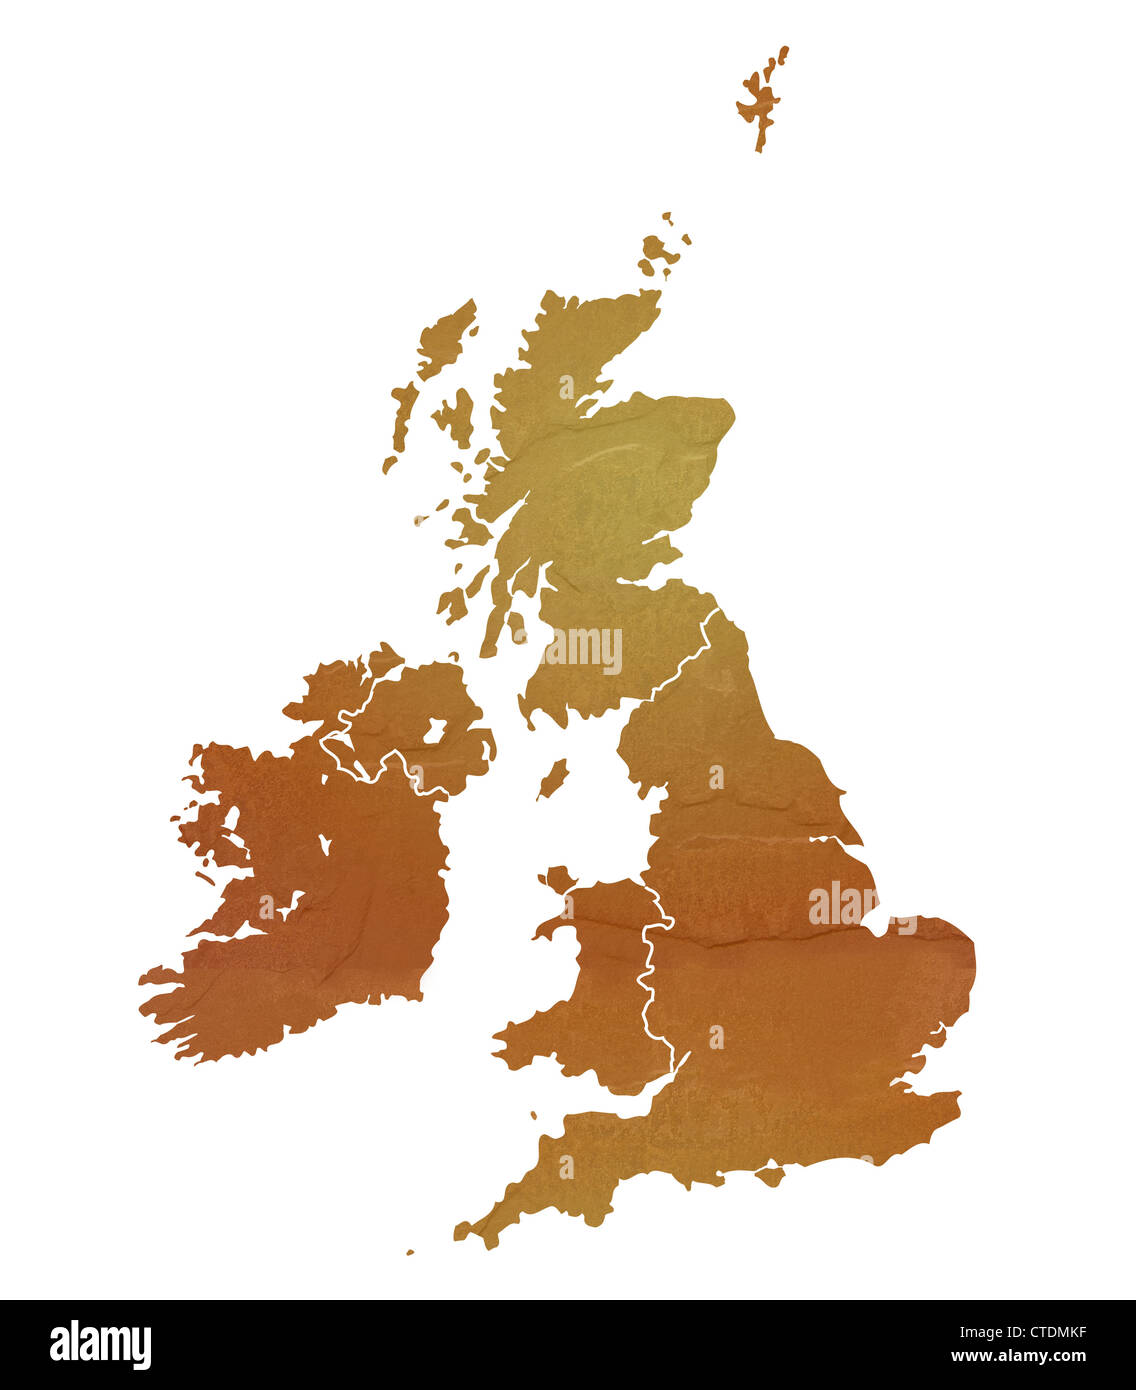 Regno Unito mappa marrone con sasso o pietra texture, isolato su sfondo bianco con percorso di clipping. Foto Stock